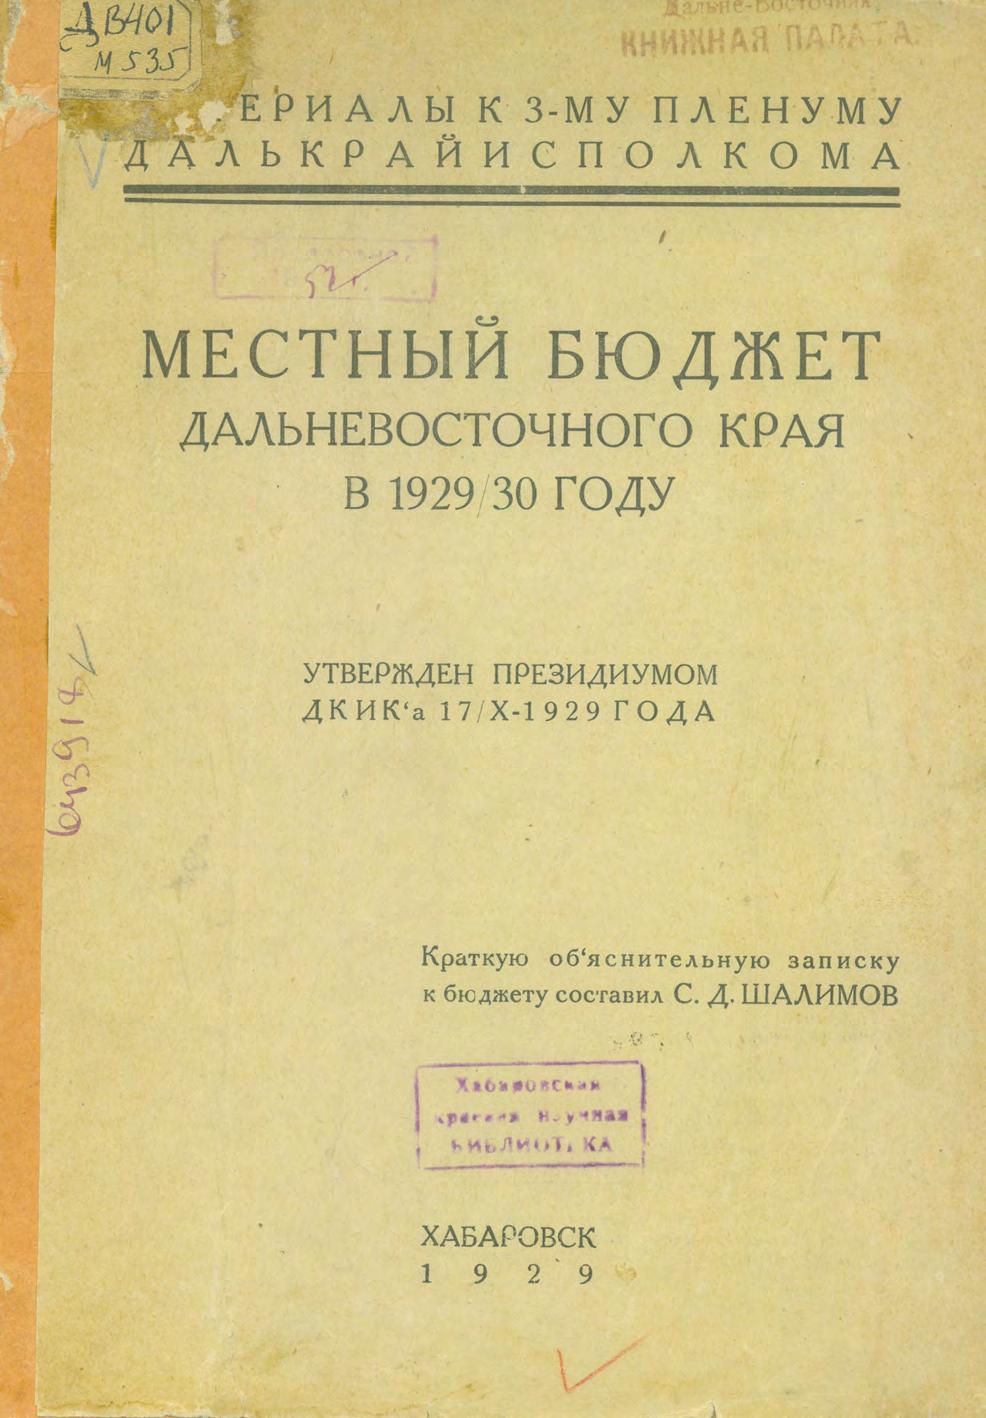 Местный бюджет Дальневосточного края в 1929/30 году